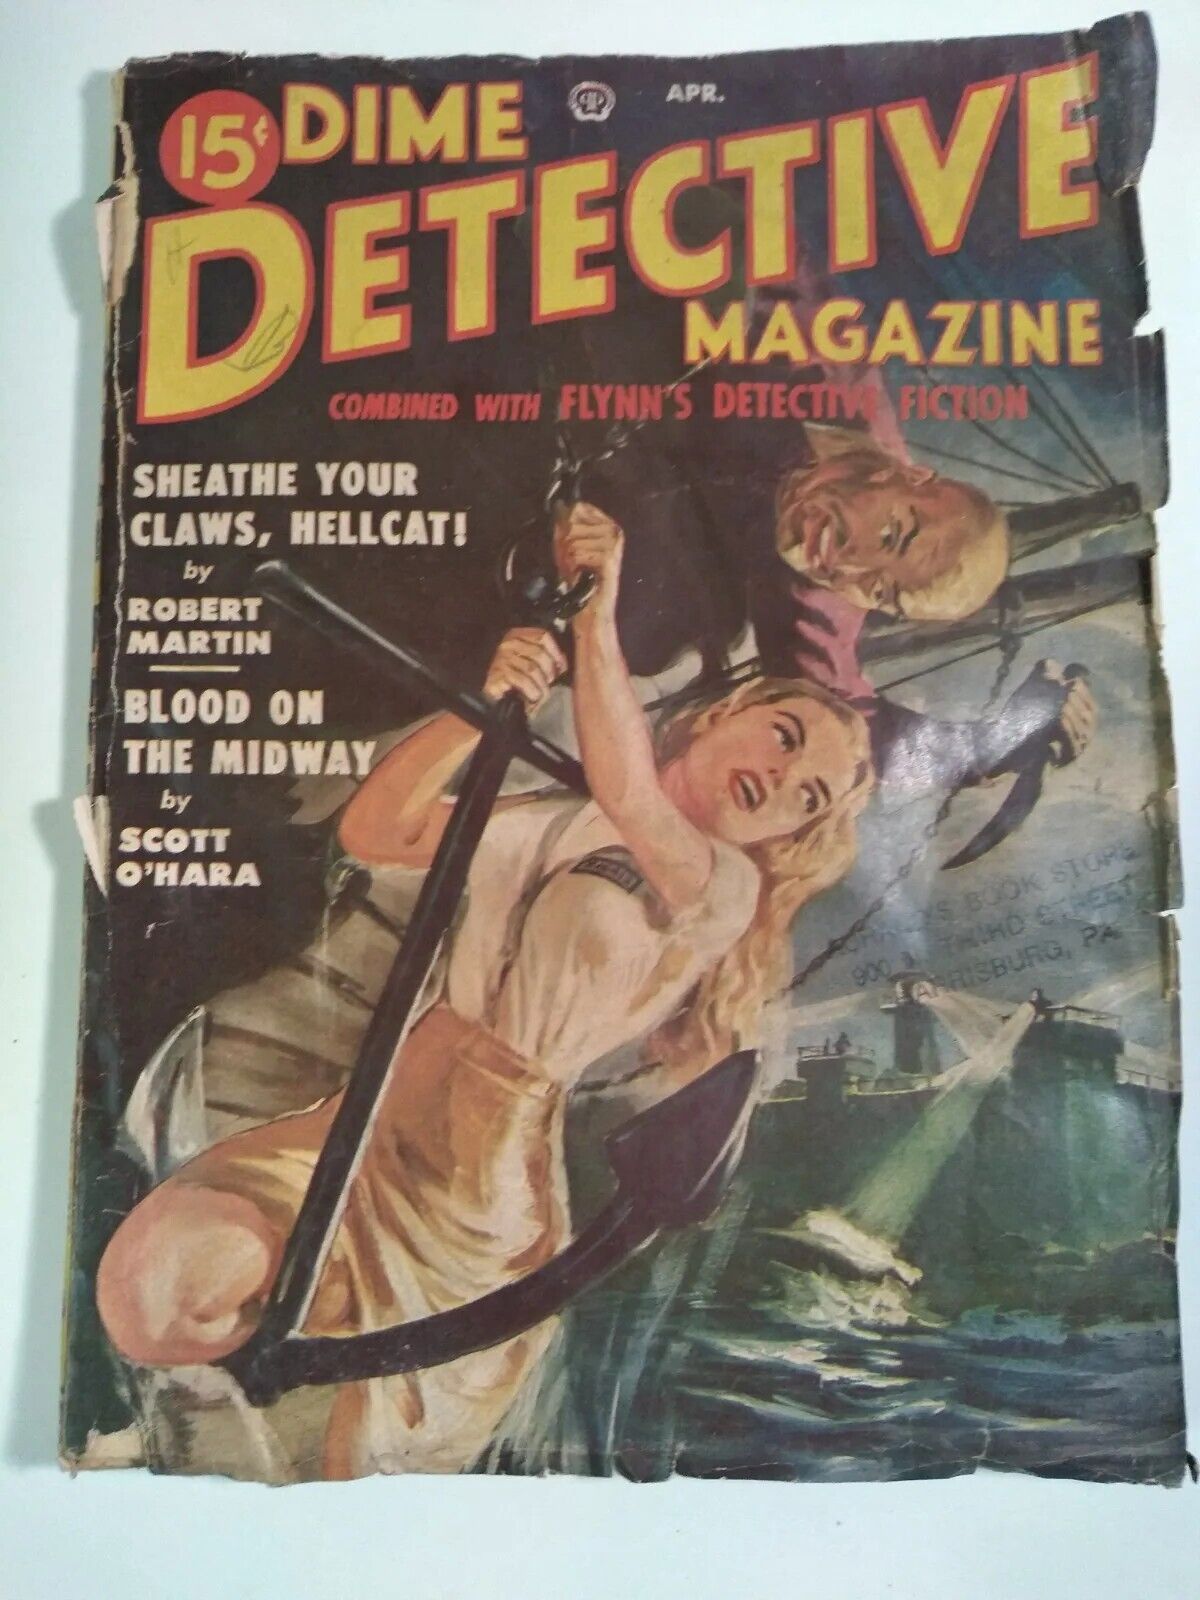 Dime Detective Magazine April 1950 Pulp Detective Fiction 50s Art Mystery & Ads